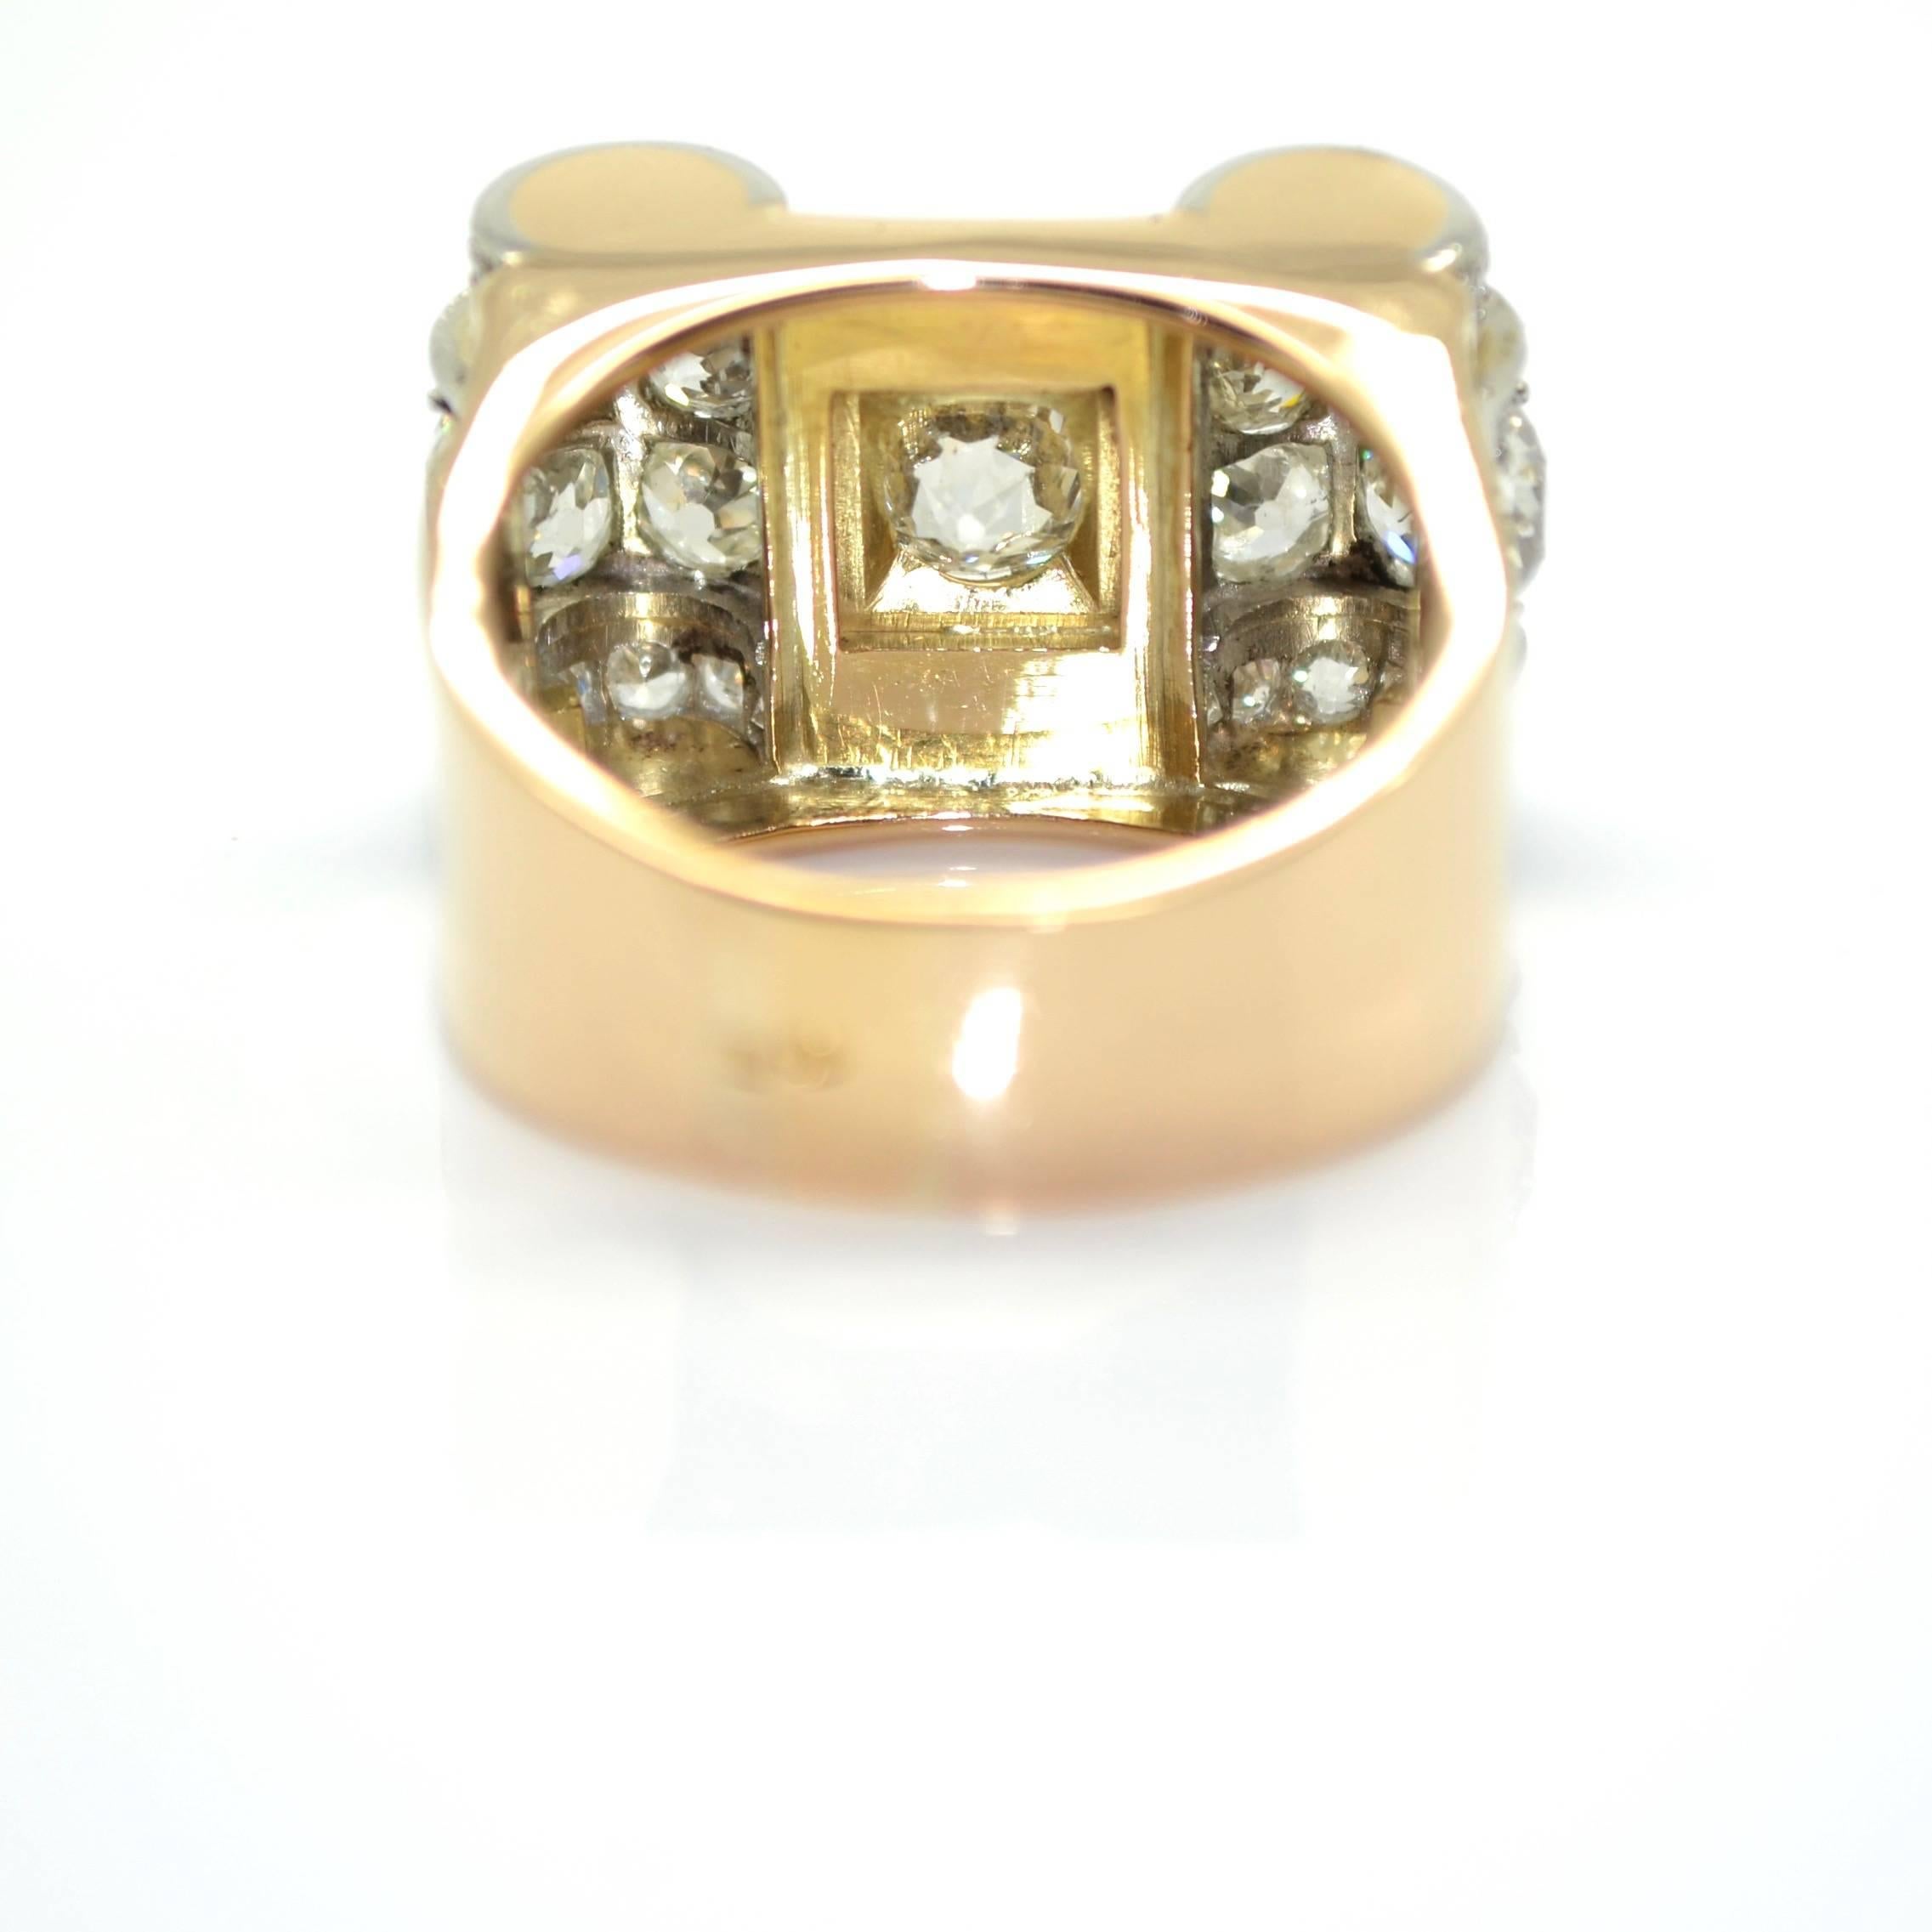 Old European Cut 1940s 18 Karat Gold and Platinum French Tank Ring, 3.60 Carat Diamonds